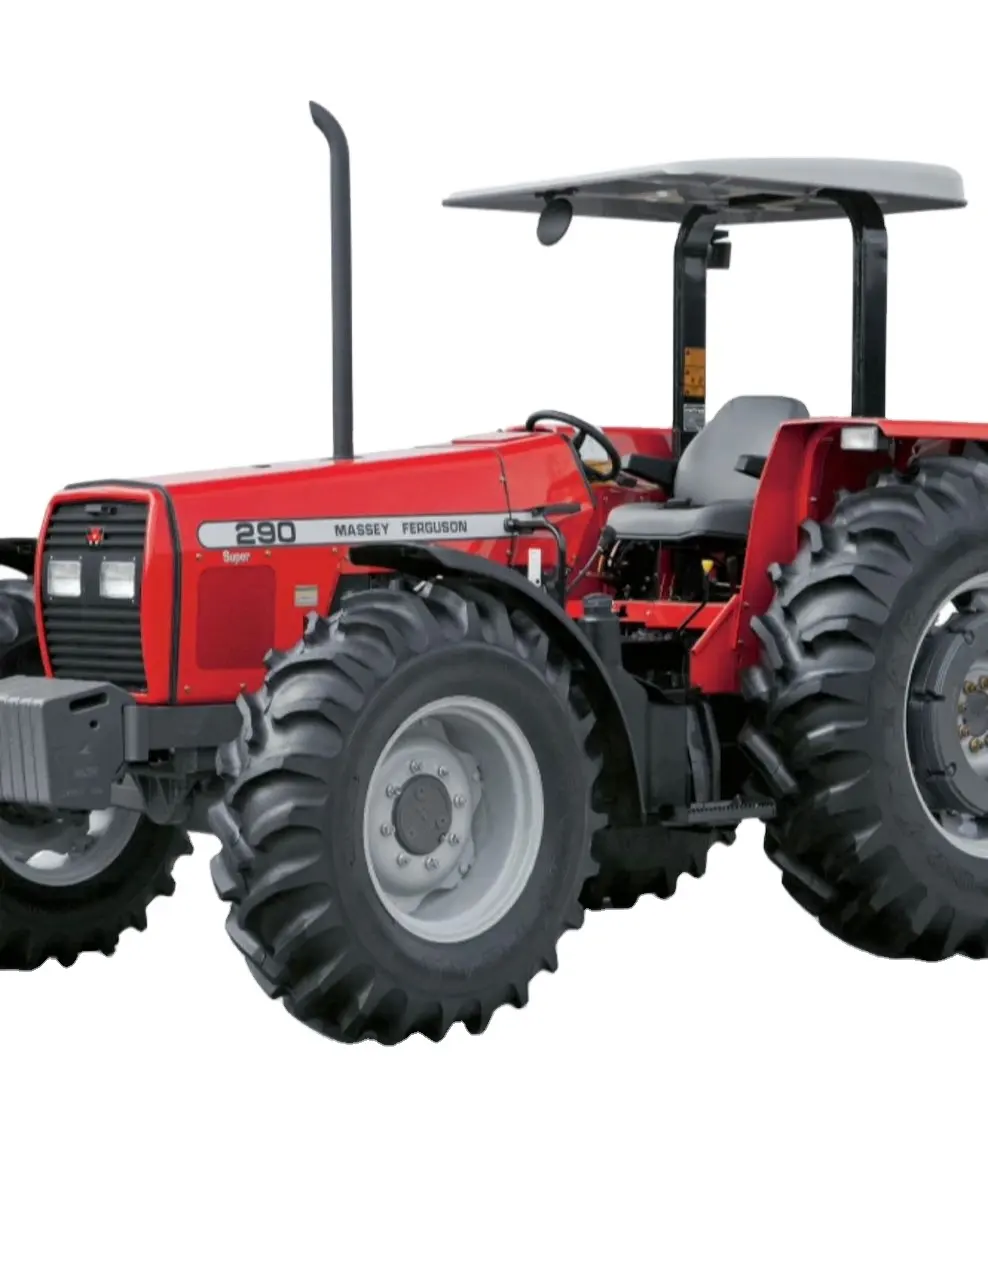 זול מאסי 290 MF 385 וmf 390 חקלאות מכונת חוות טרקטור קובוטה למכירה במחירים סבירים